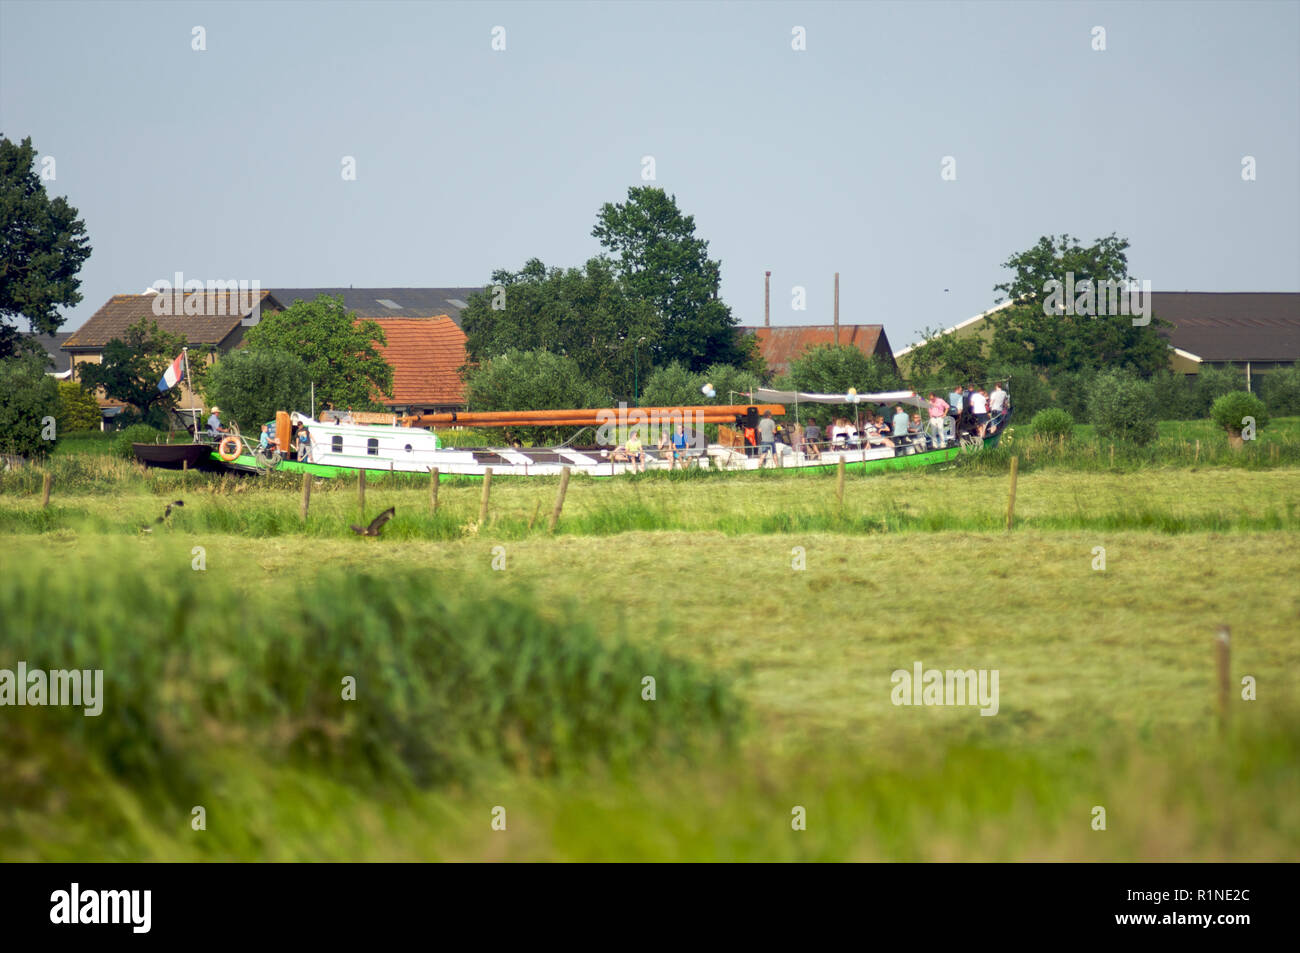 Un grupo de personas que viajaban en un bote a motor por el canal de Eem entre prados y casas de labranza, Países Bajos Foto de stock